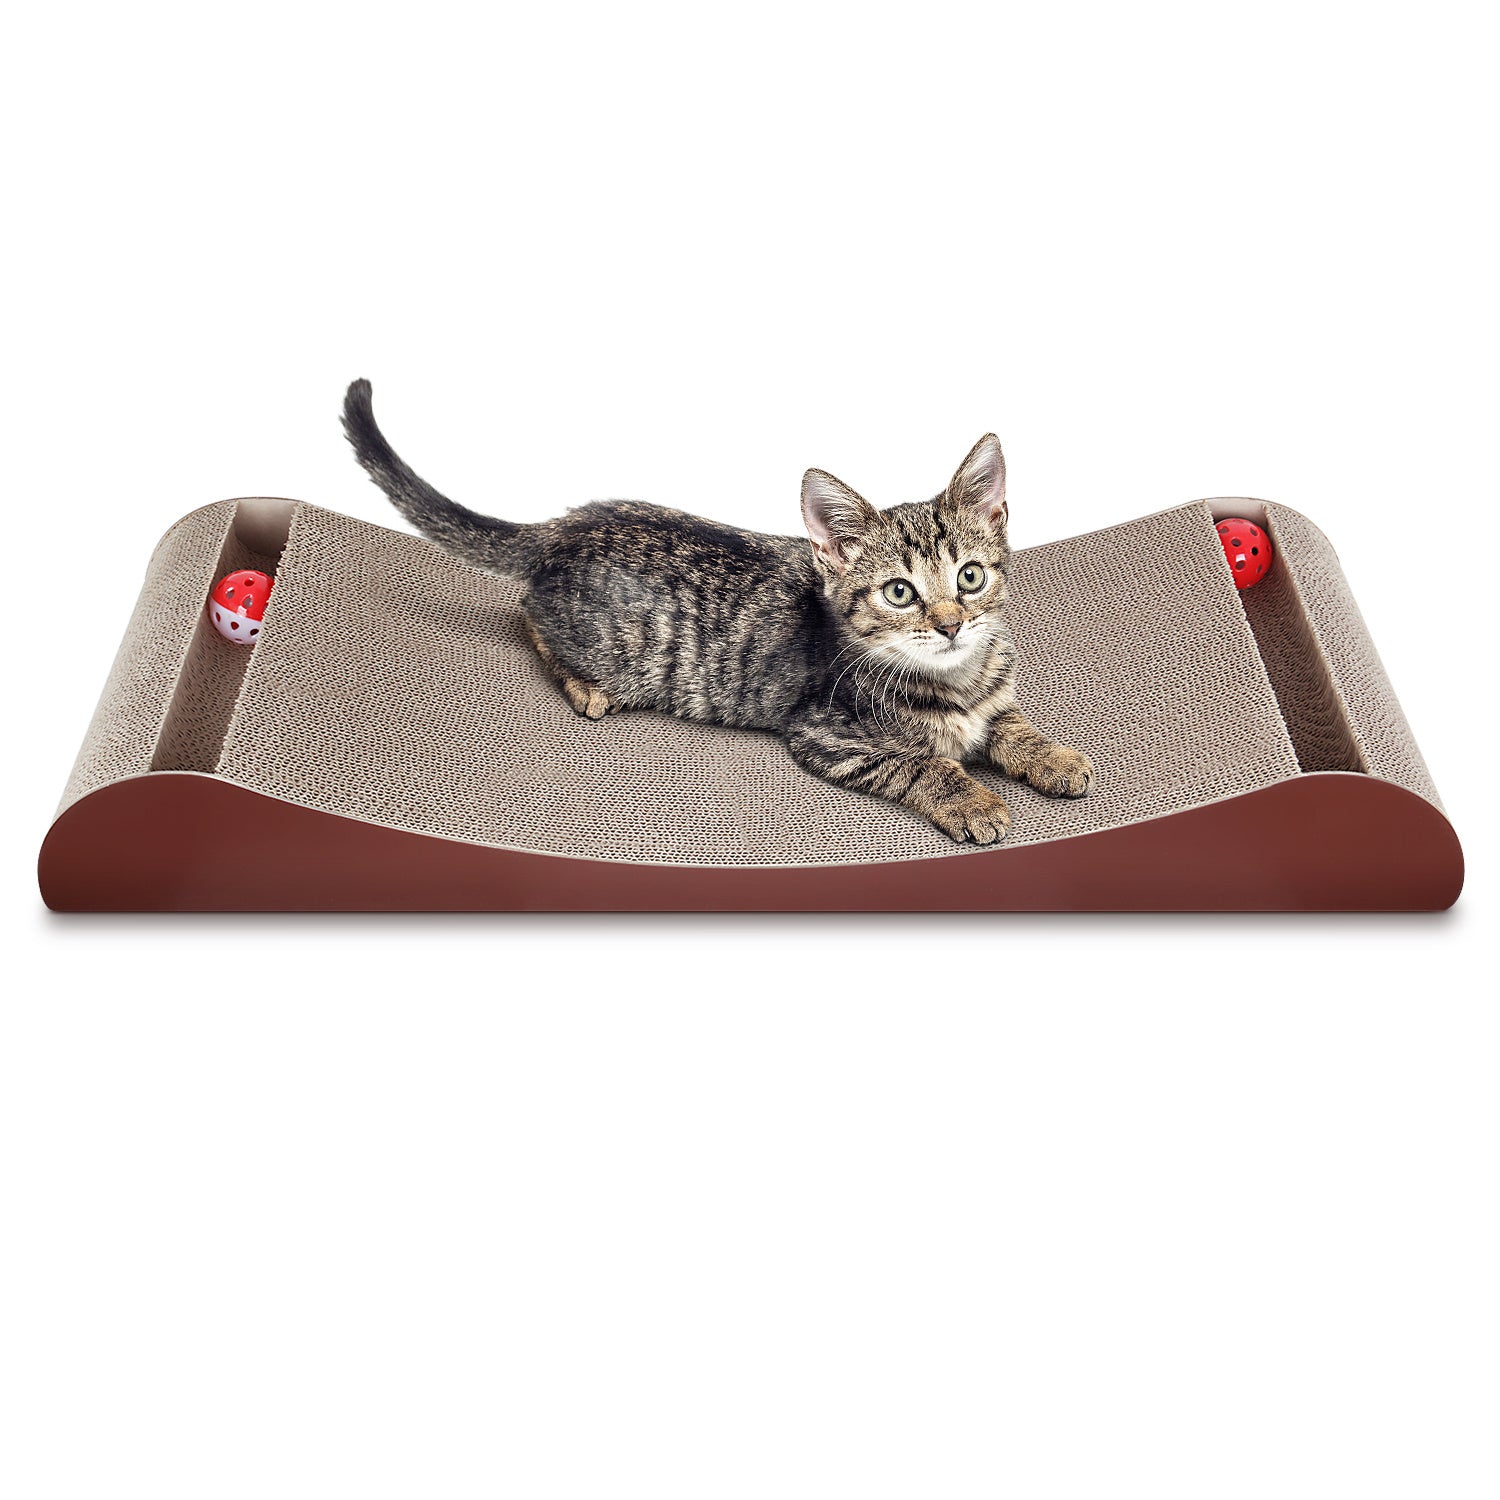 Scratch Me Cat Scratcher Cardboard Lounge Bed